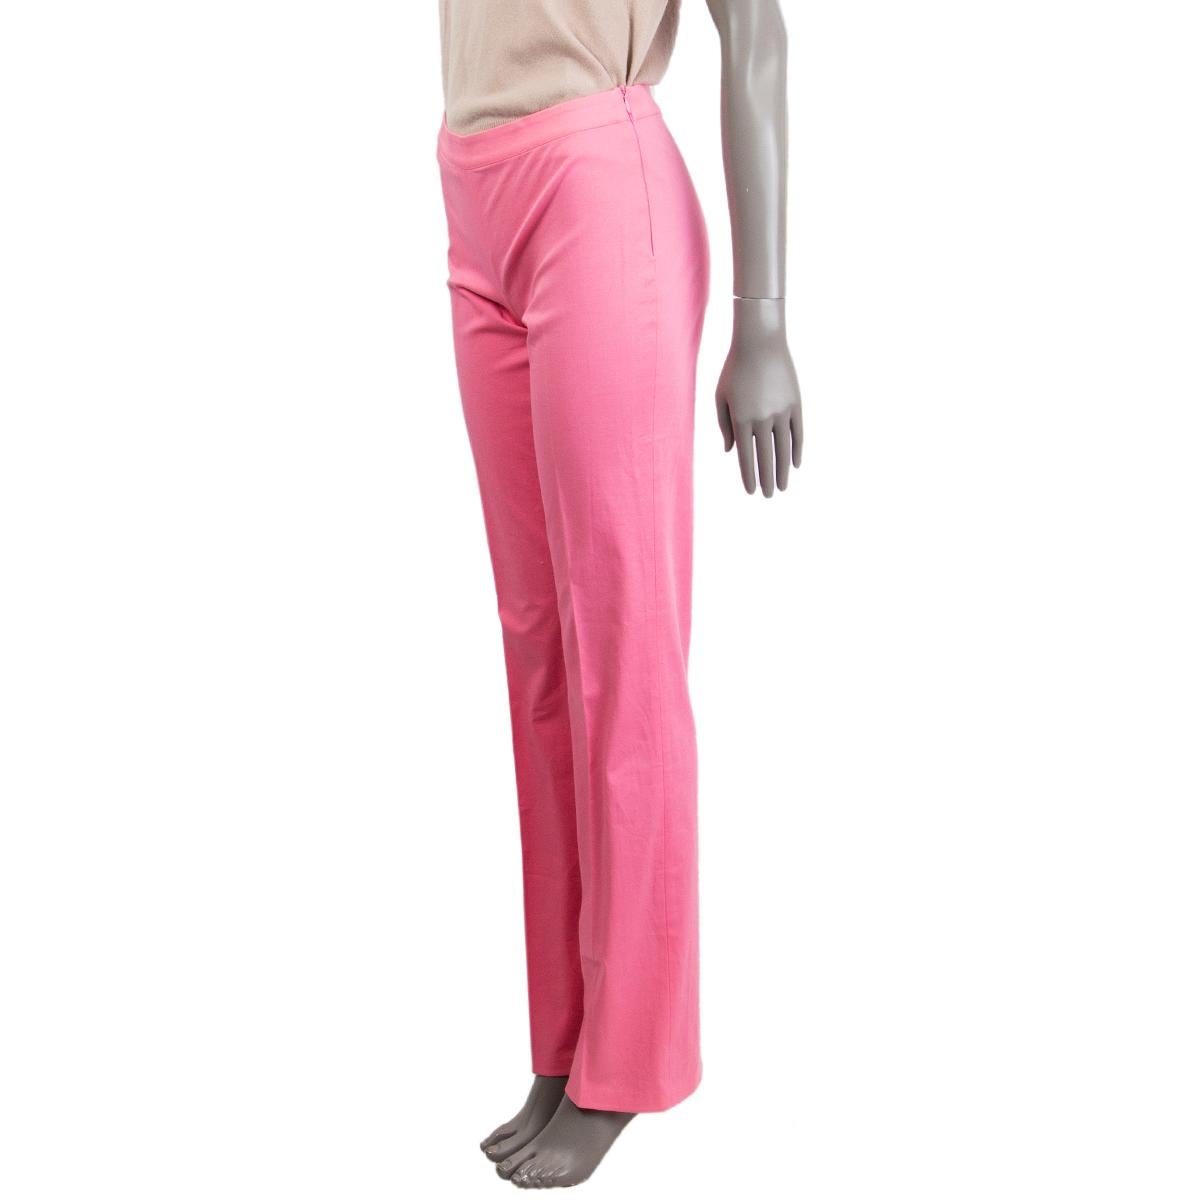 Pantalon droit 100% authentique de Blumarine en coton flamant (96%) spandex (4%) avec une jambe droite, une taille moyenne et se ferme avec une fermeture éclair dissimulée sur le côté gauche. Non doublé. A été porté et est en excellent